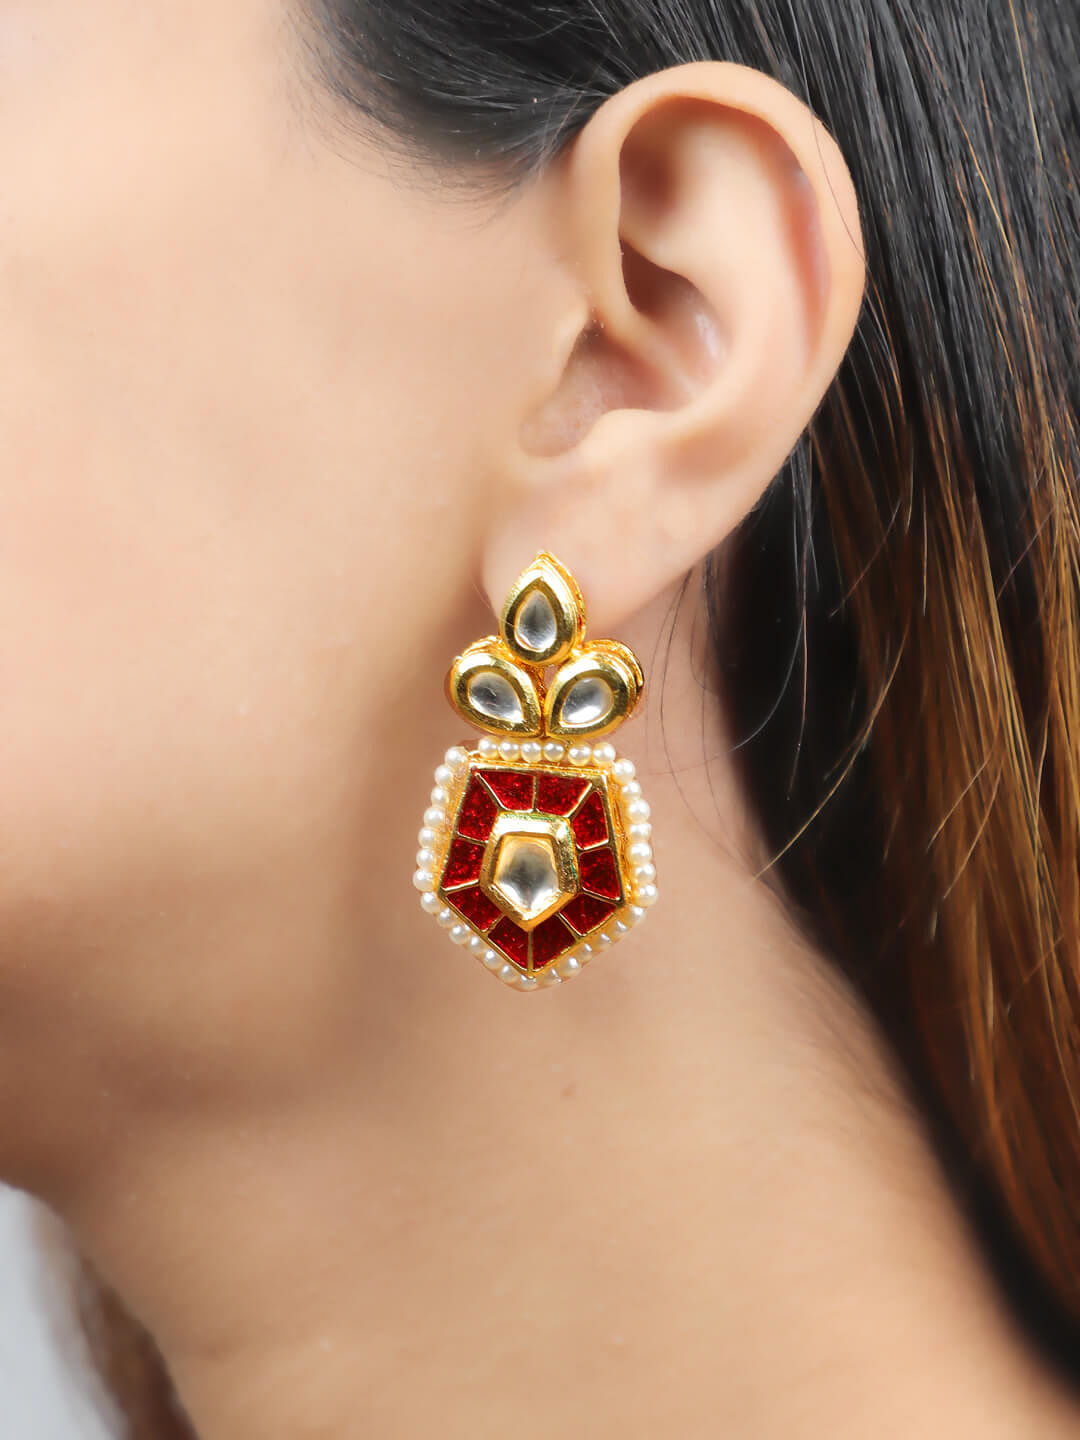 Pin by Lakshita Khichi on joolry | Indian jewelry, Fashion jewelry, Bridal  jewellery inspiration